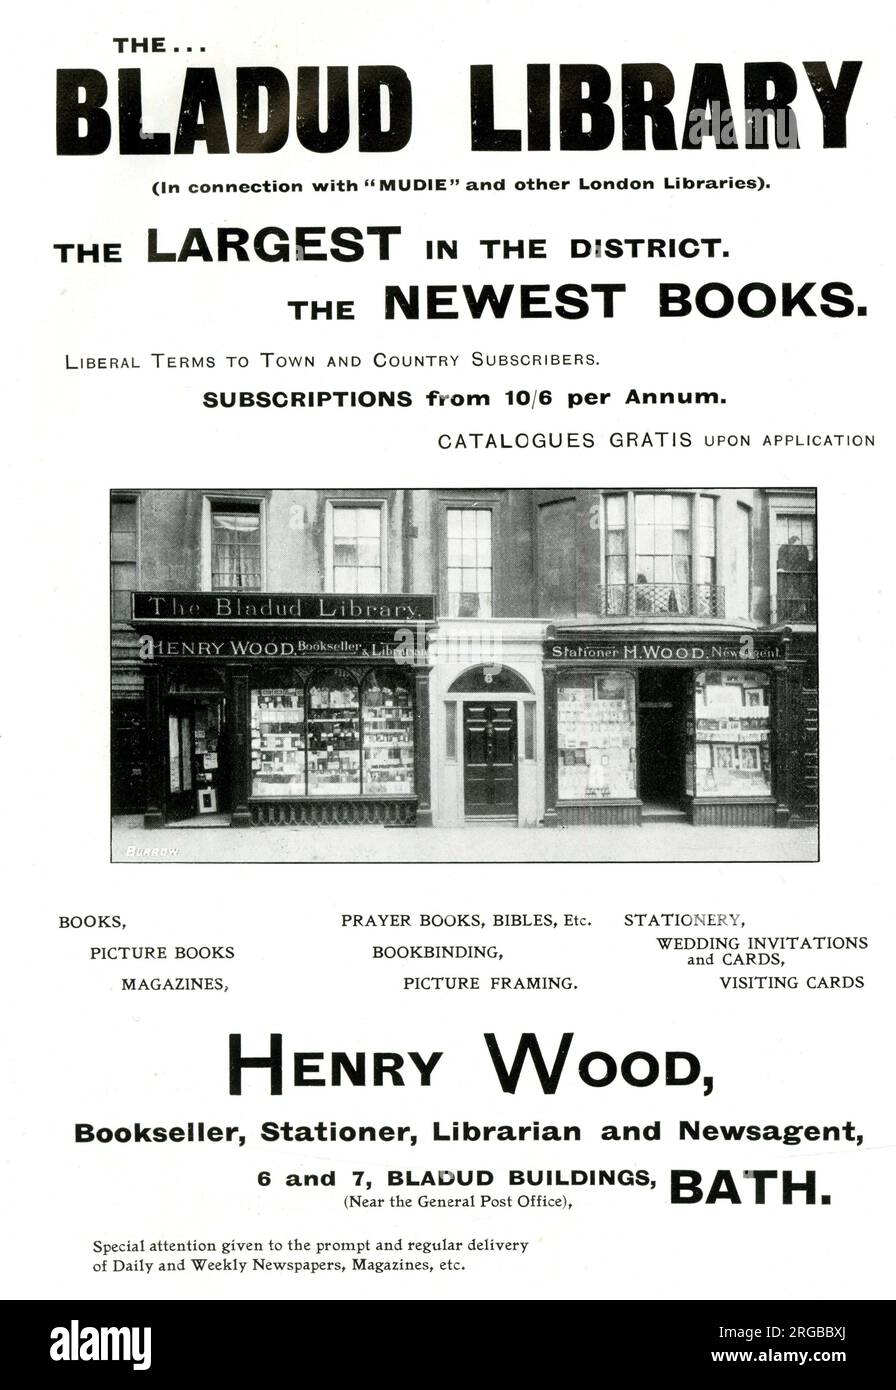 Pubblicità per la Biblioteca Bladud e Henry Wood, Bookseller, Stationer, Librarian e NewsAgent, Bath Foto Stock